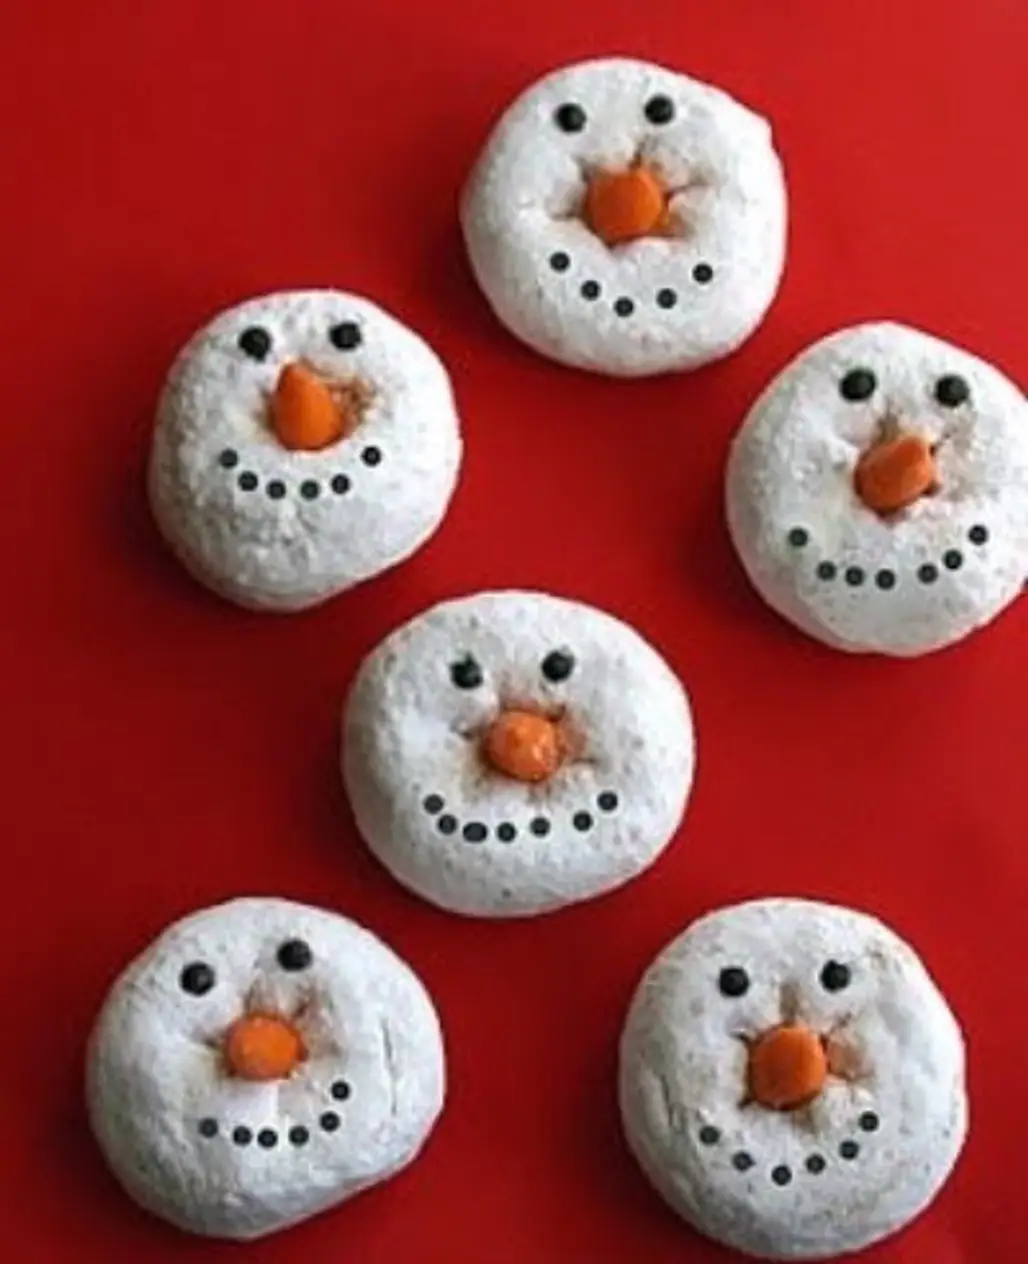 Snowman Donuts